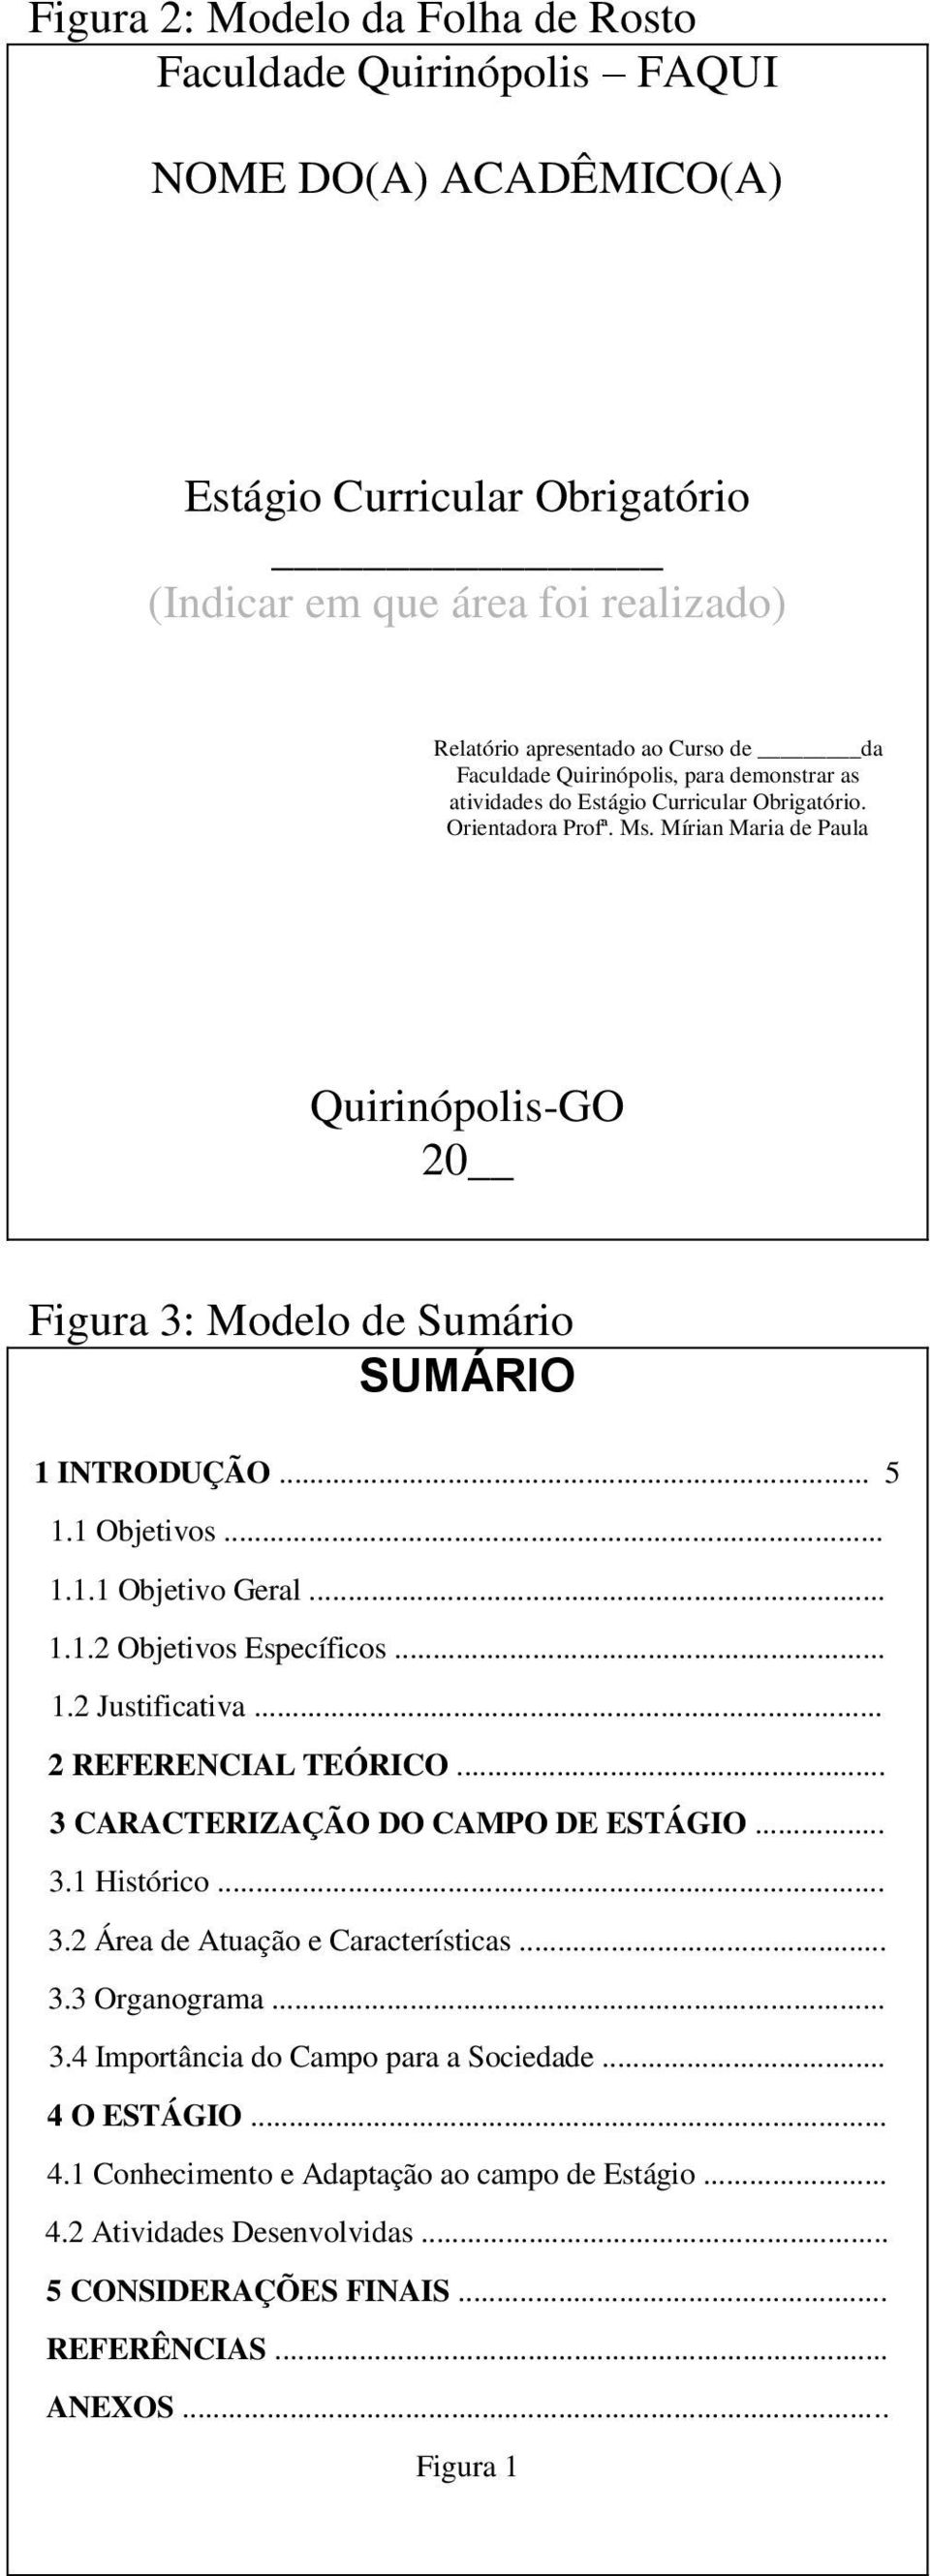 Mírian Maria de Paula Quirinópolis-GO 20 Figura 3: Modelo de Sumário SUMÁRIO 1 INTRODUÇÃO... 5 1.1 Objetivos... 1.1.1 Objetivo Geral... 1.1.2 Objetivos Específicos... 1.2 Justificativa.